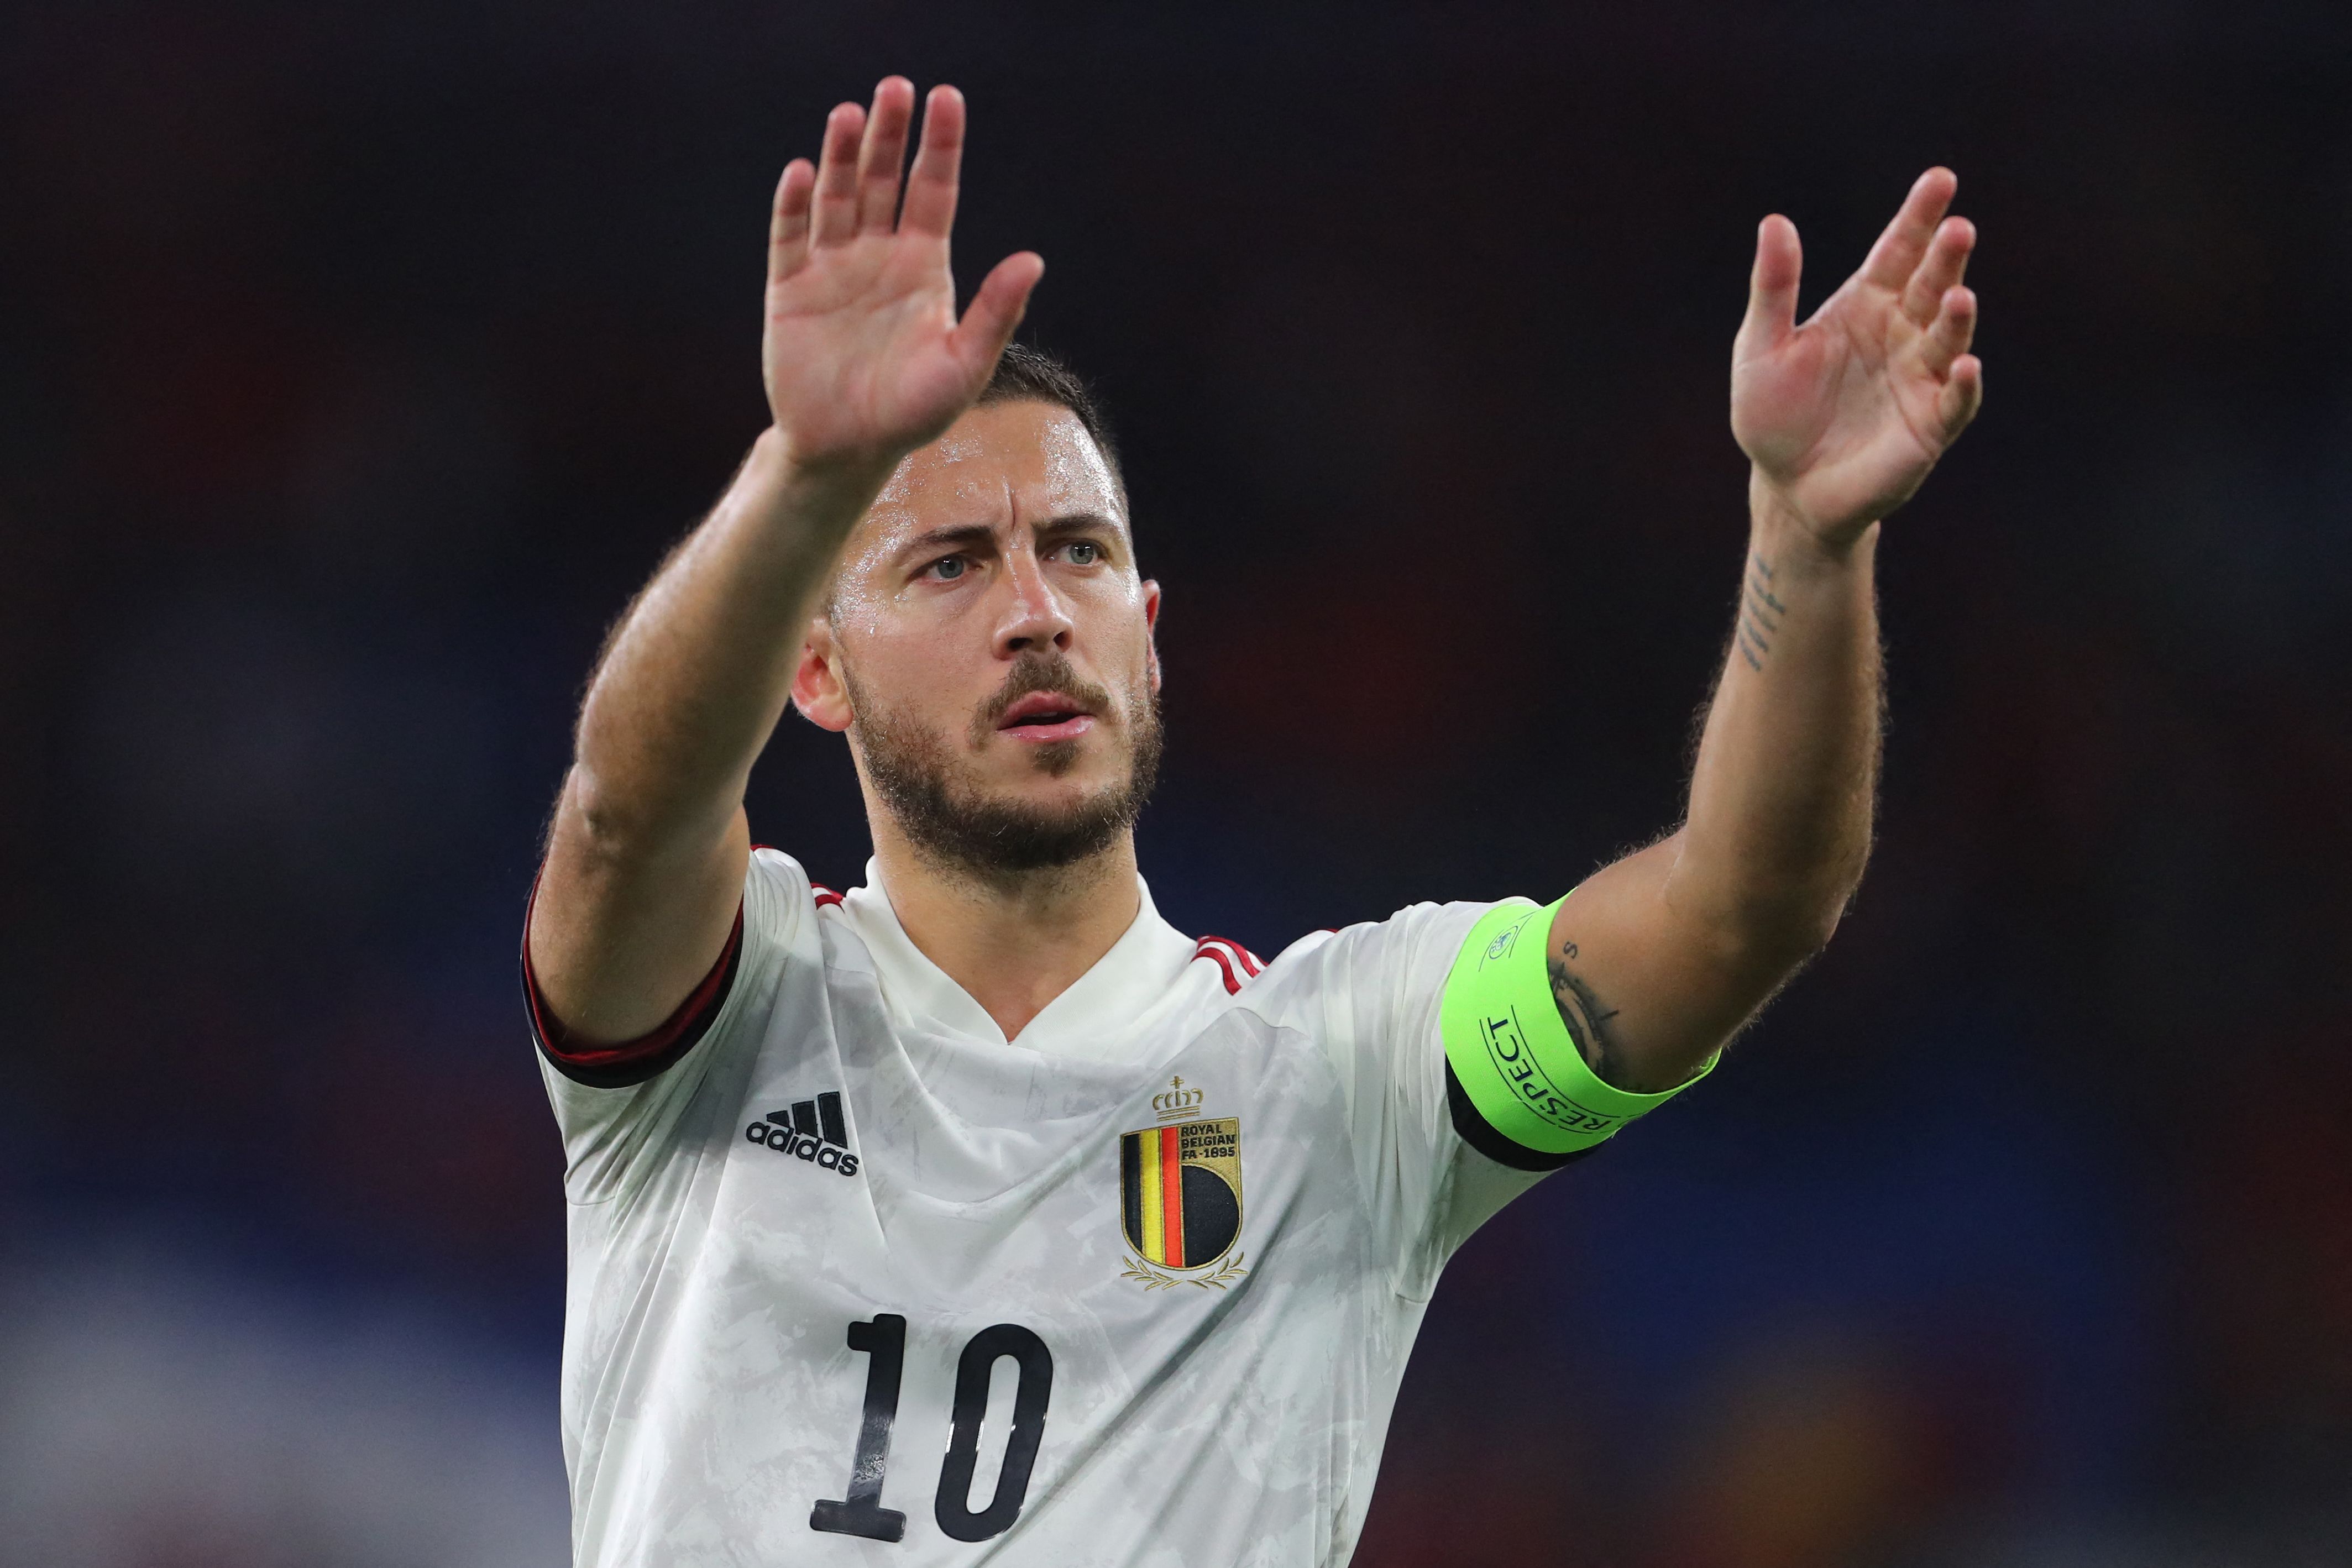 Bélgica y su entrenador anhelan ver al "mejor" Hazard en el Mundial de Qatar 2022. (Foto Prensa Libre: AFP)